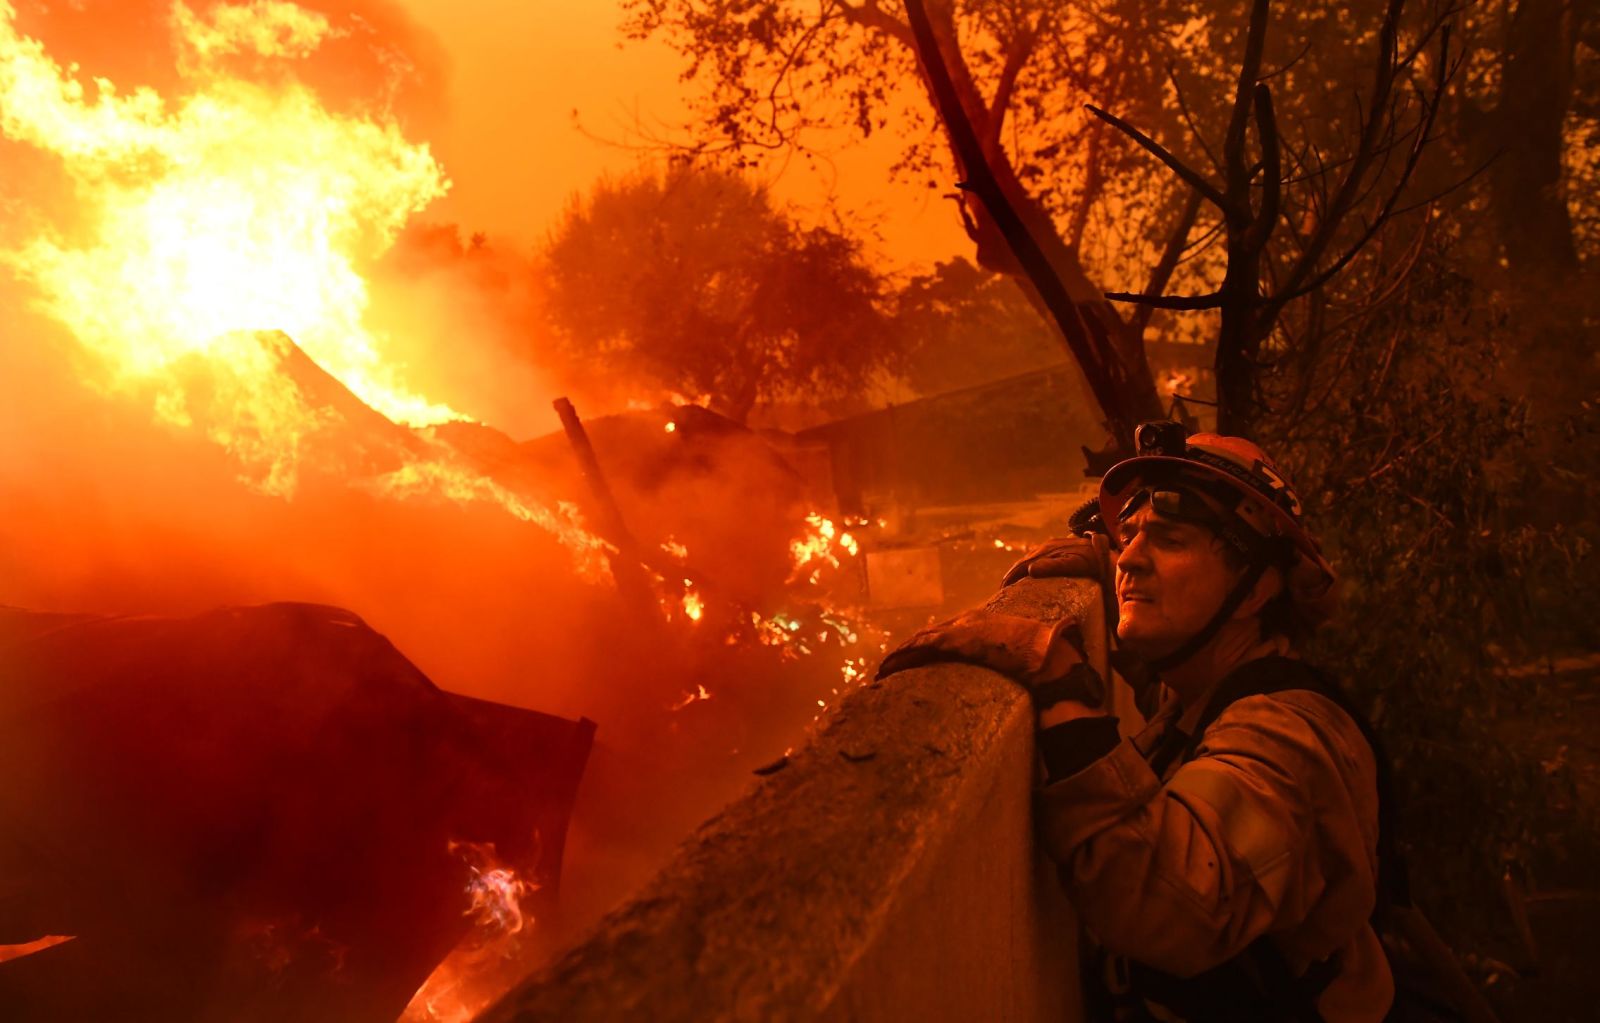 Hình ảnh cháy rừng Cực Chất Full 4K  Bộ sưu tập hình ảnh cháy rừng hàng  đầu với hơn 999 hình